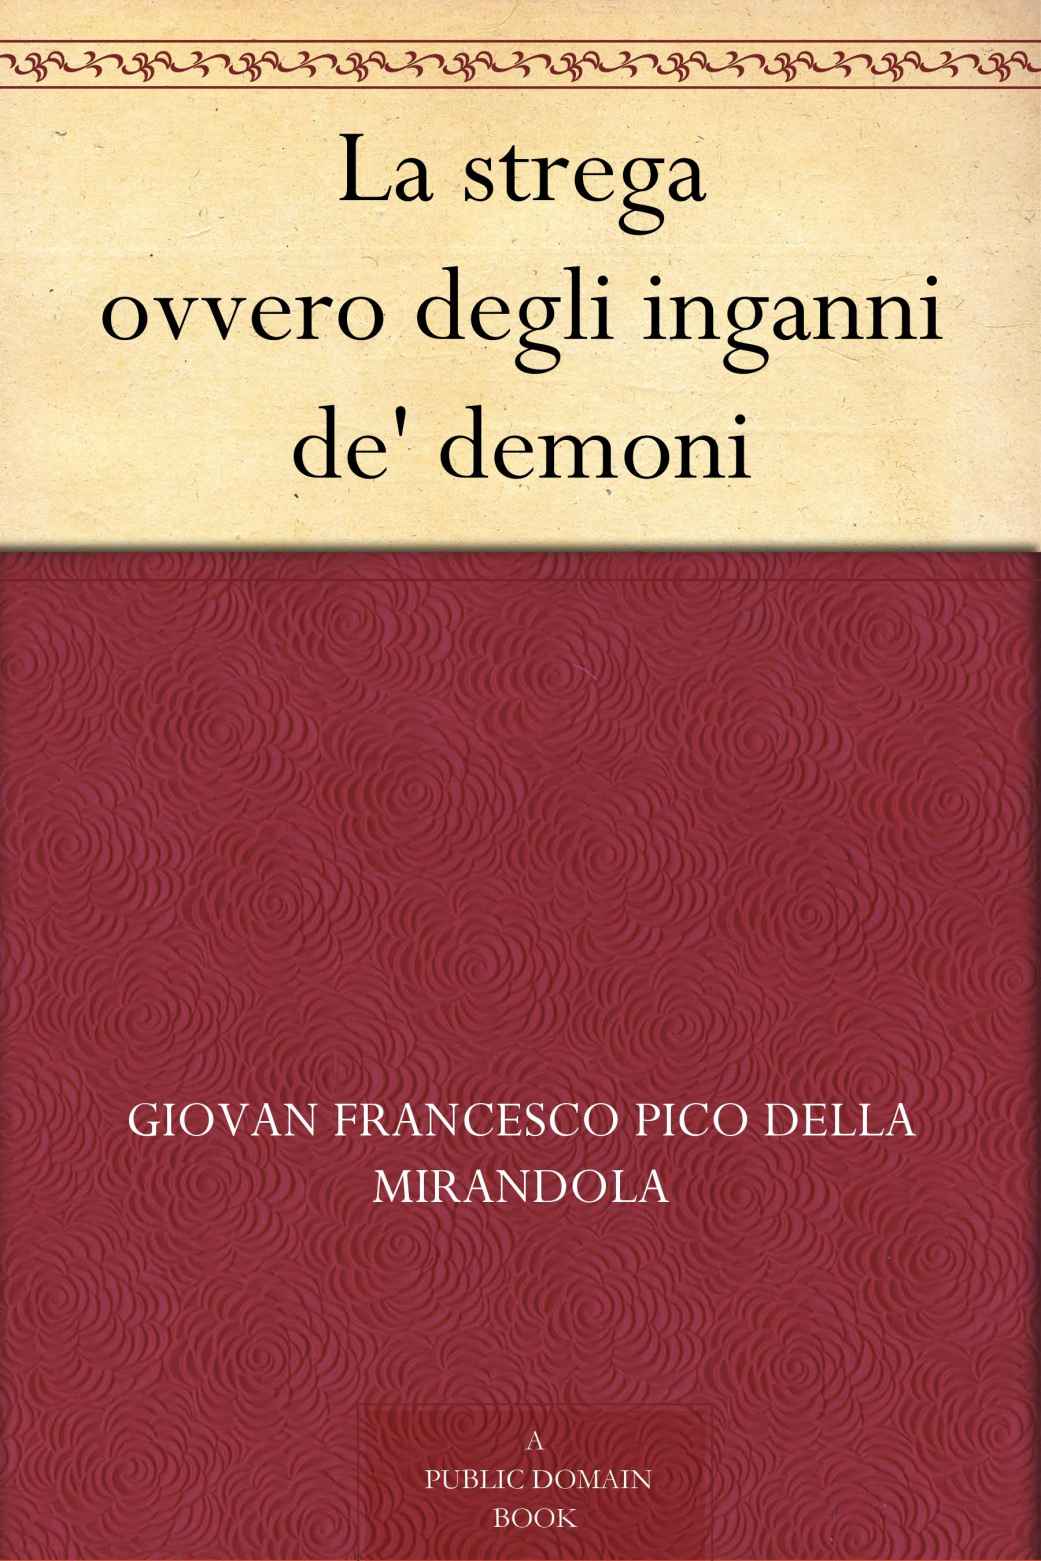 La strega ovvero degli inganni de' demoni (Italian Edition)